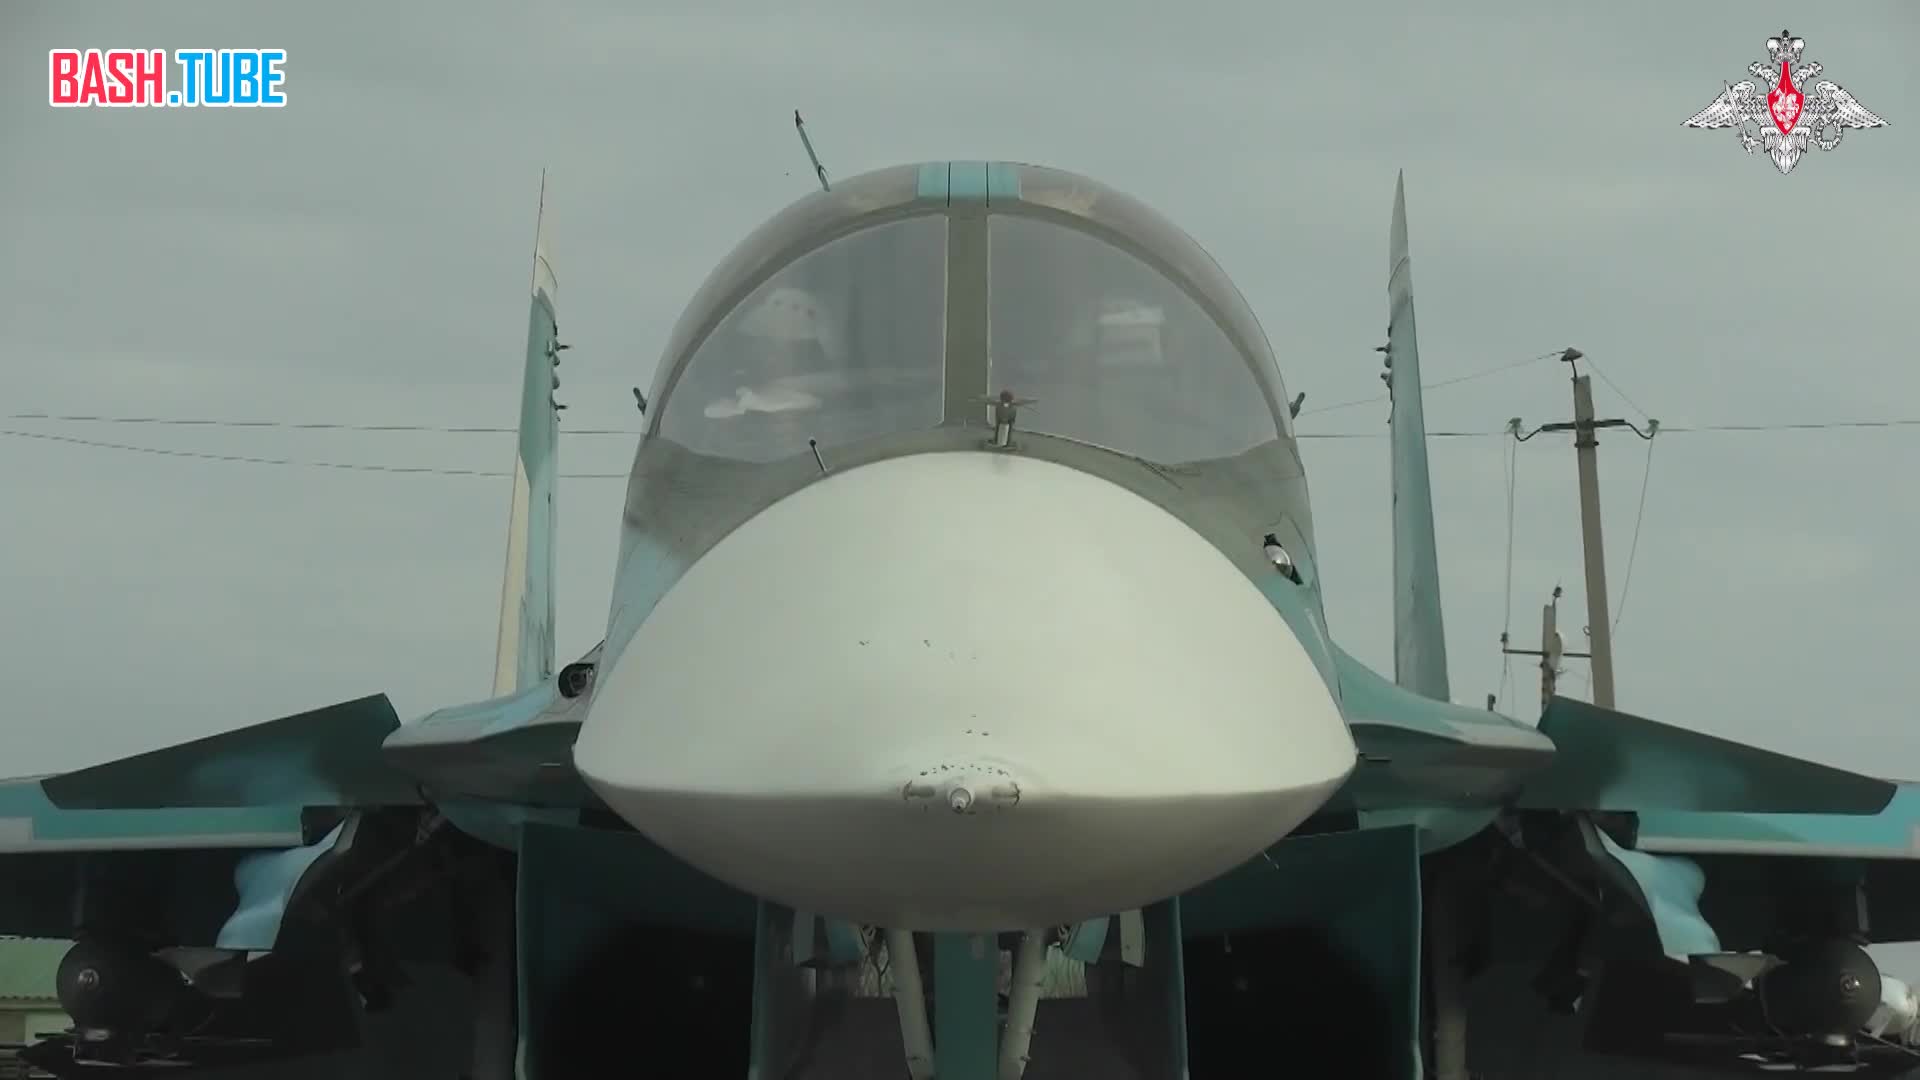  Экипажи Су-34 нанесли удар неуправляемыми авиационными бомбами ФАБ-500 с универсальным модулем планирования и коррекции